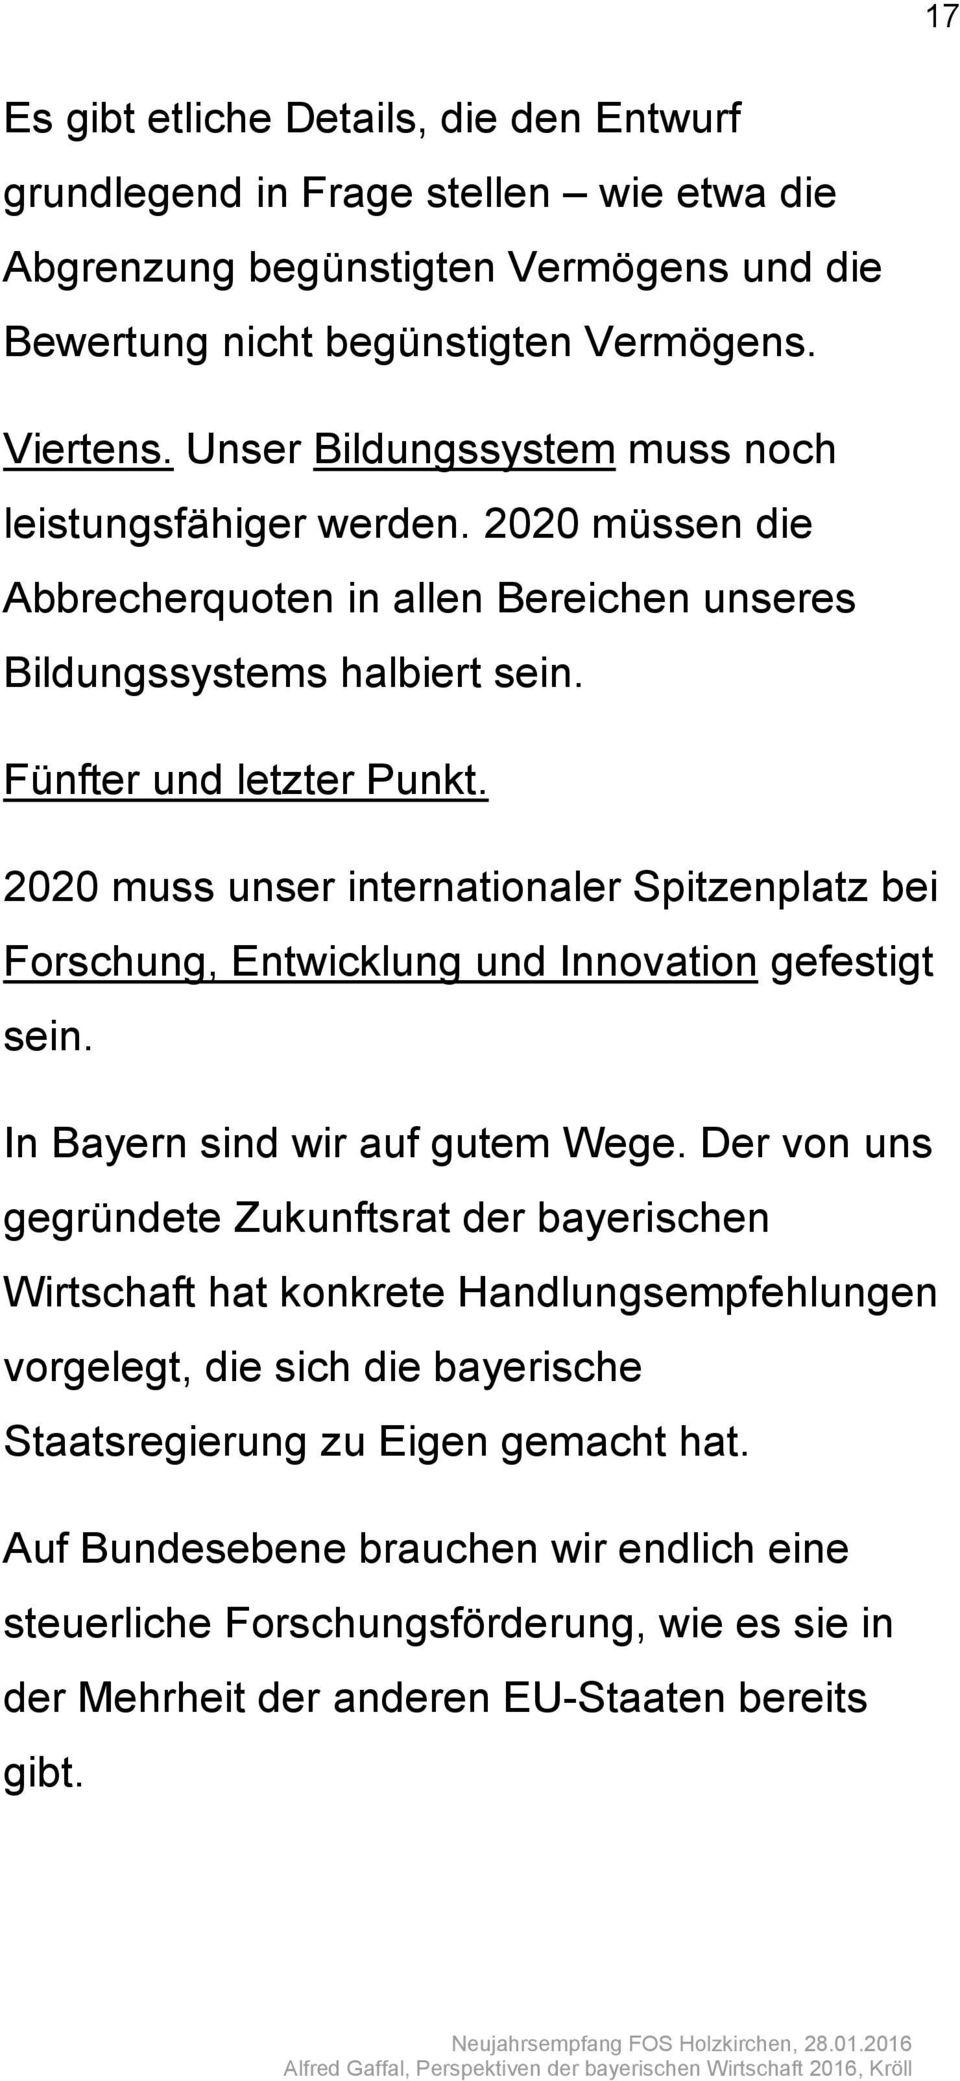 2020 muss unser internationaler Spitzenplatz bei Forschung, Entwicklung und Innovation gefestigt sein. In Bayern sind wir auf gutem Wege.